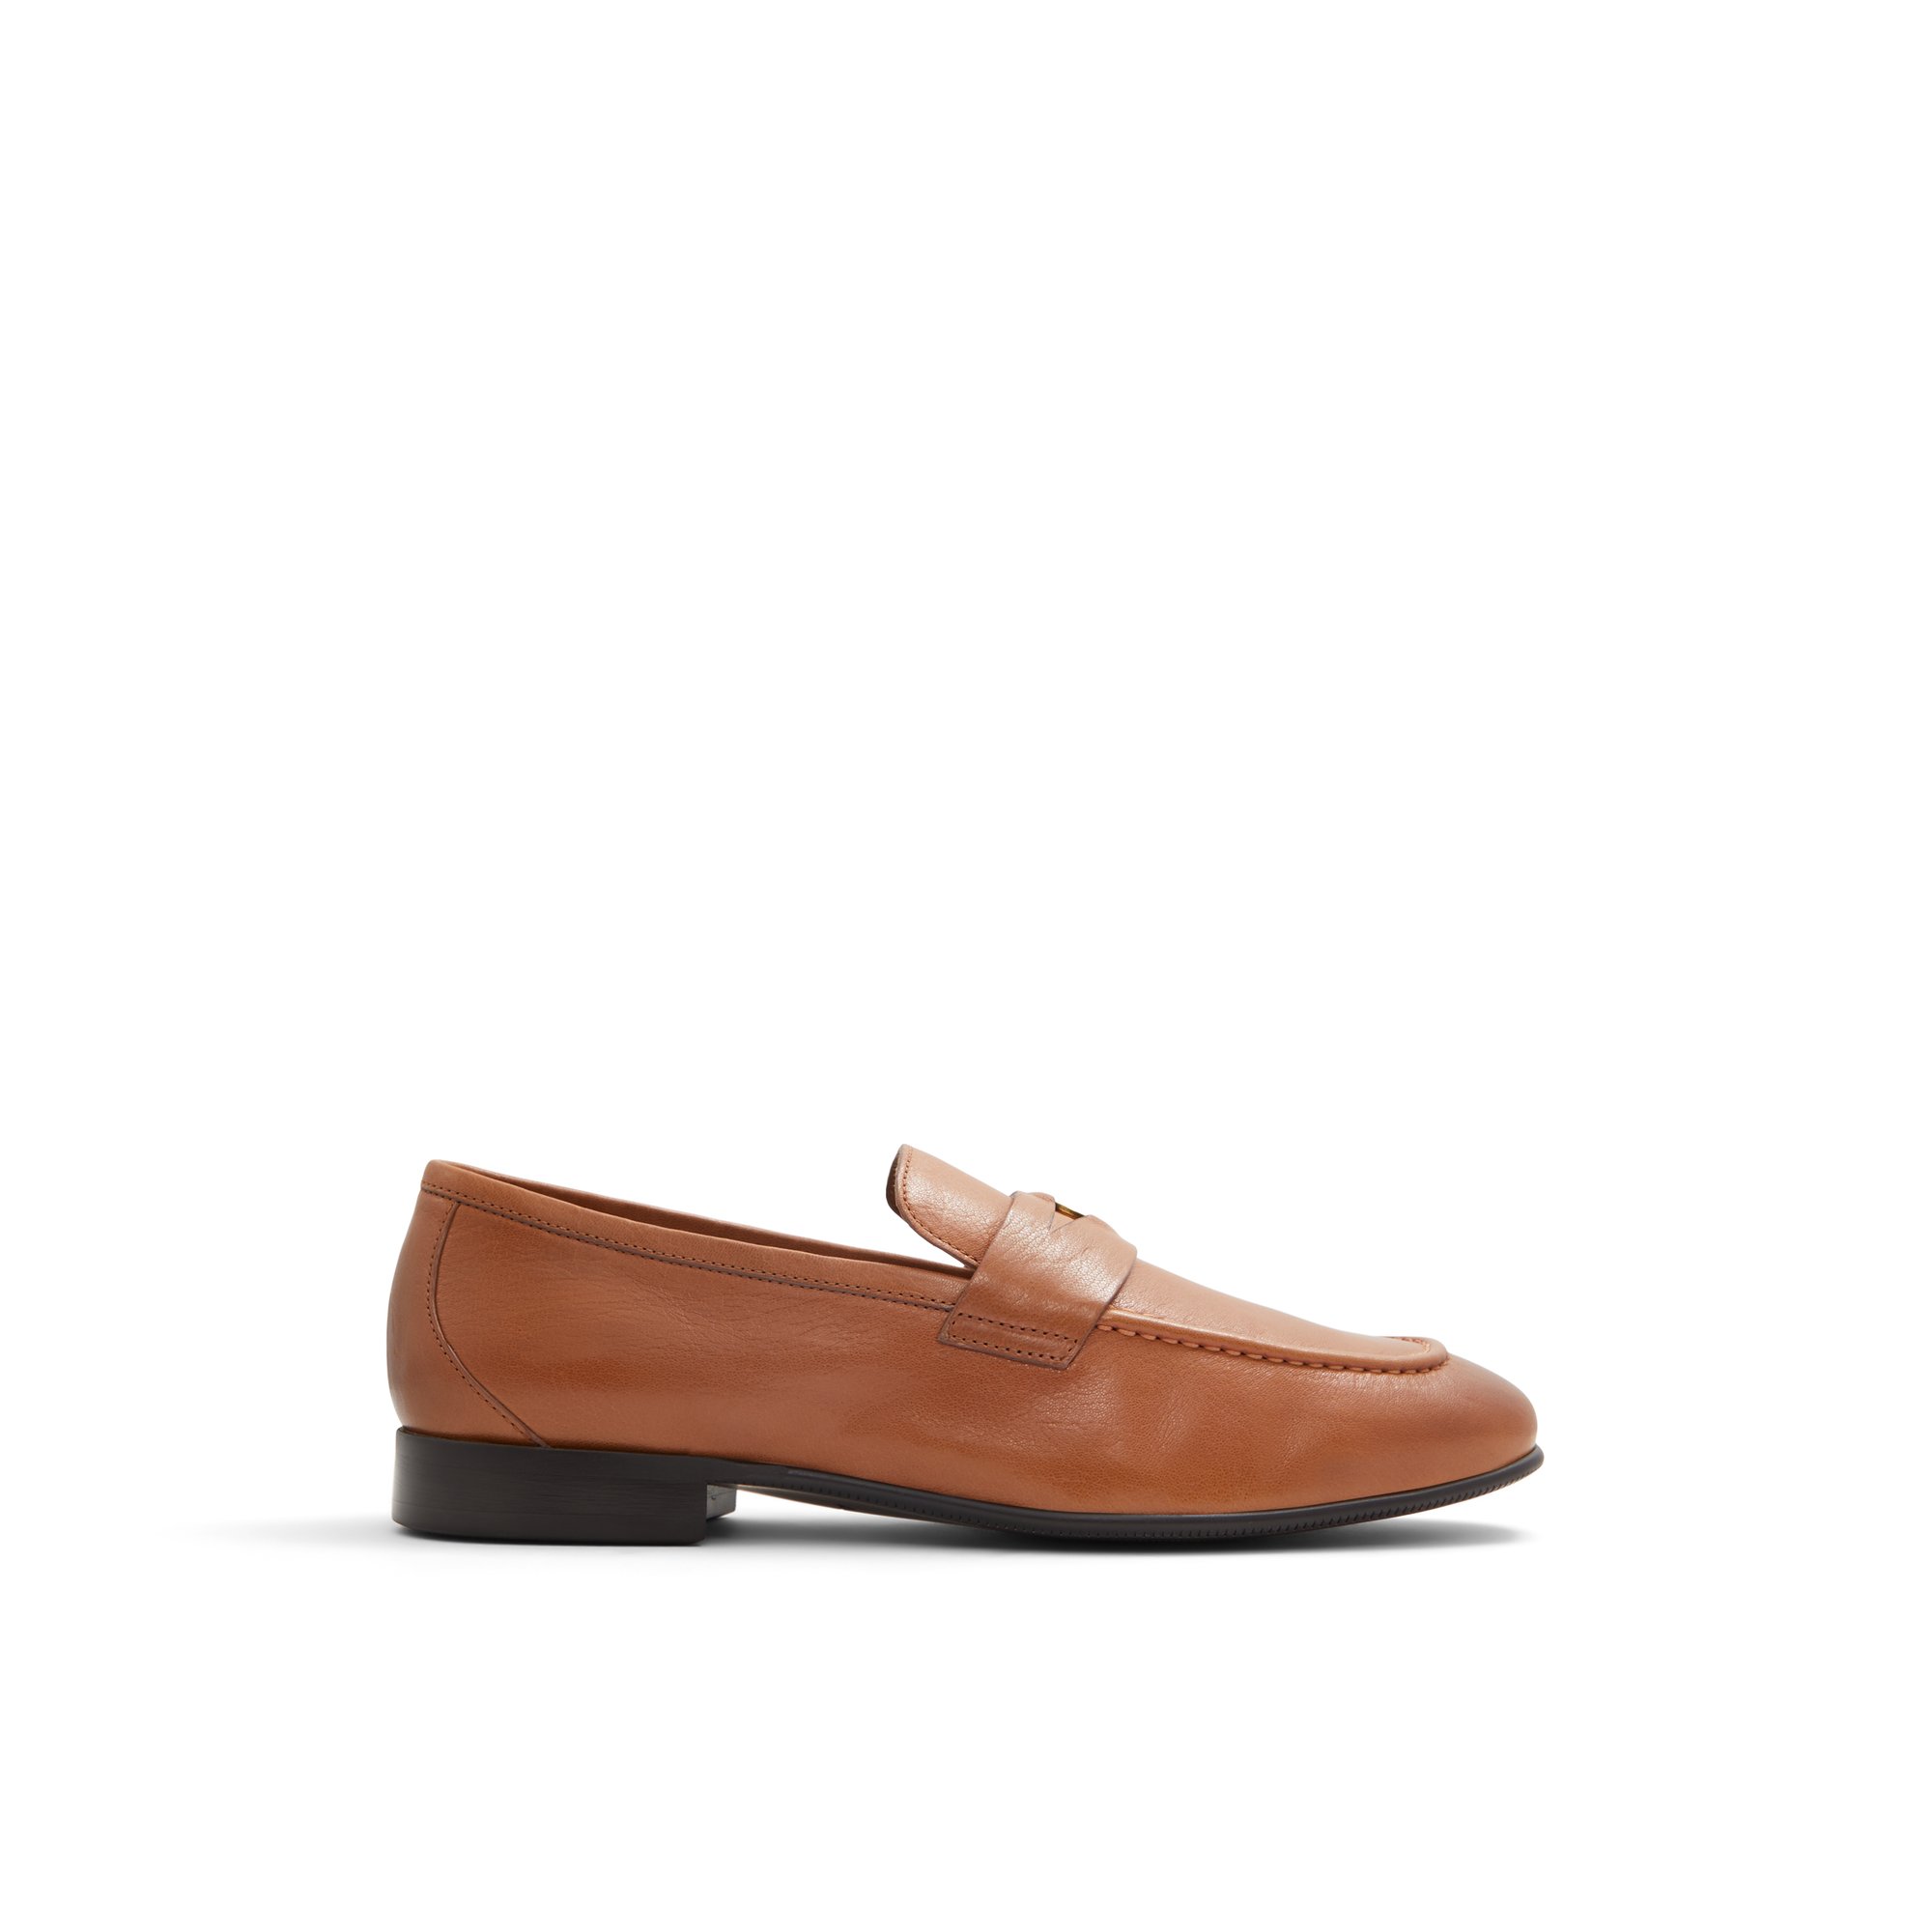 ALDO Esquire - Men's Dress Shoes - Brown